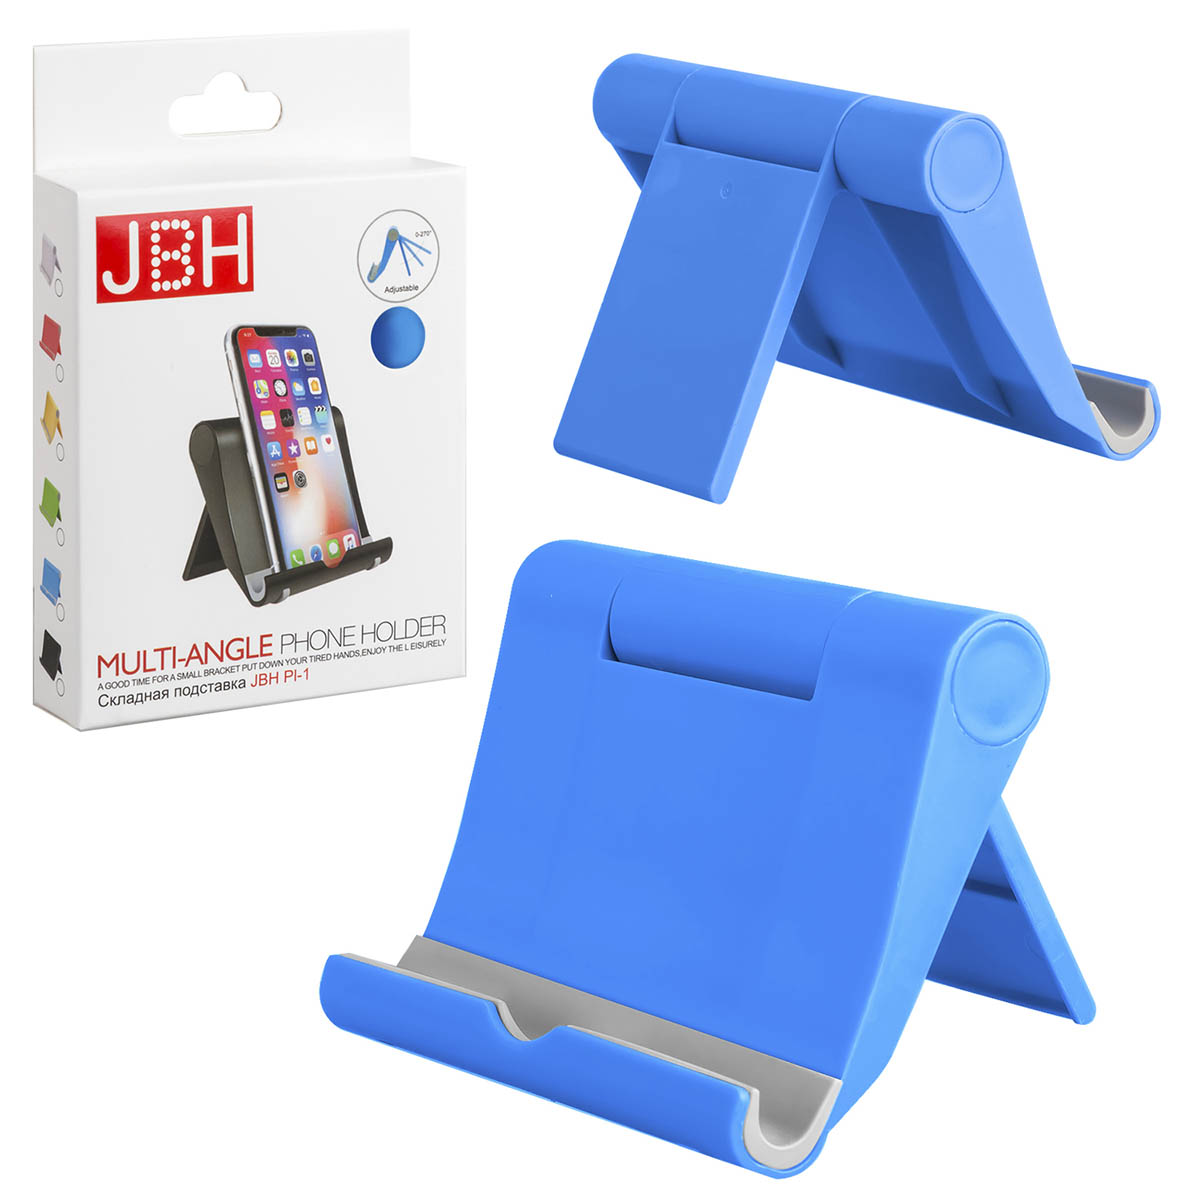 Настольная подставка, держатель JBH PL-1 для телефона, смартфона, планшета, цвет синий